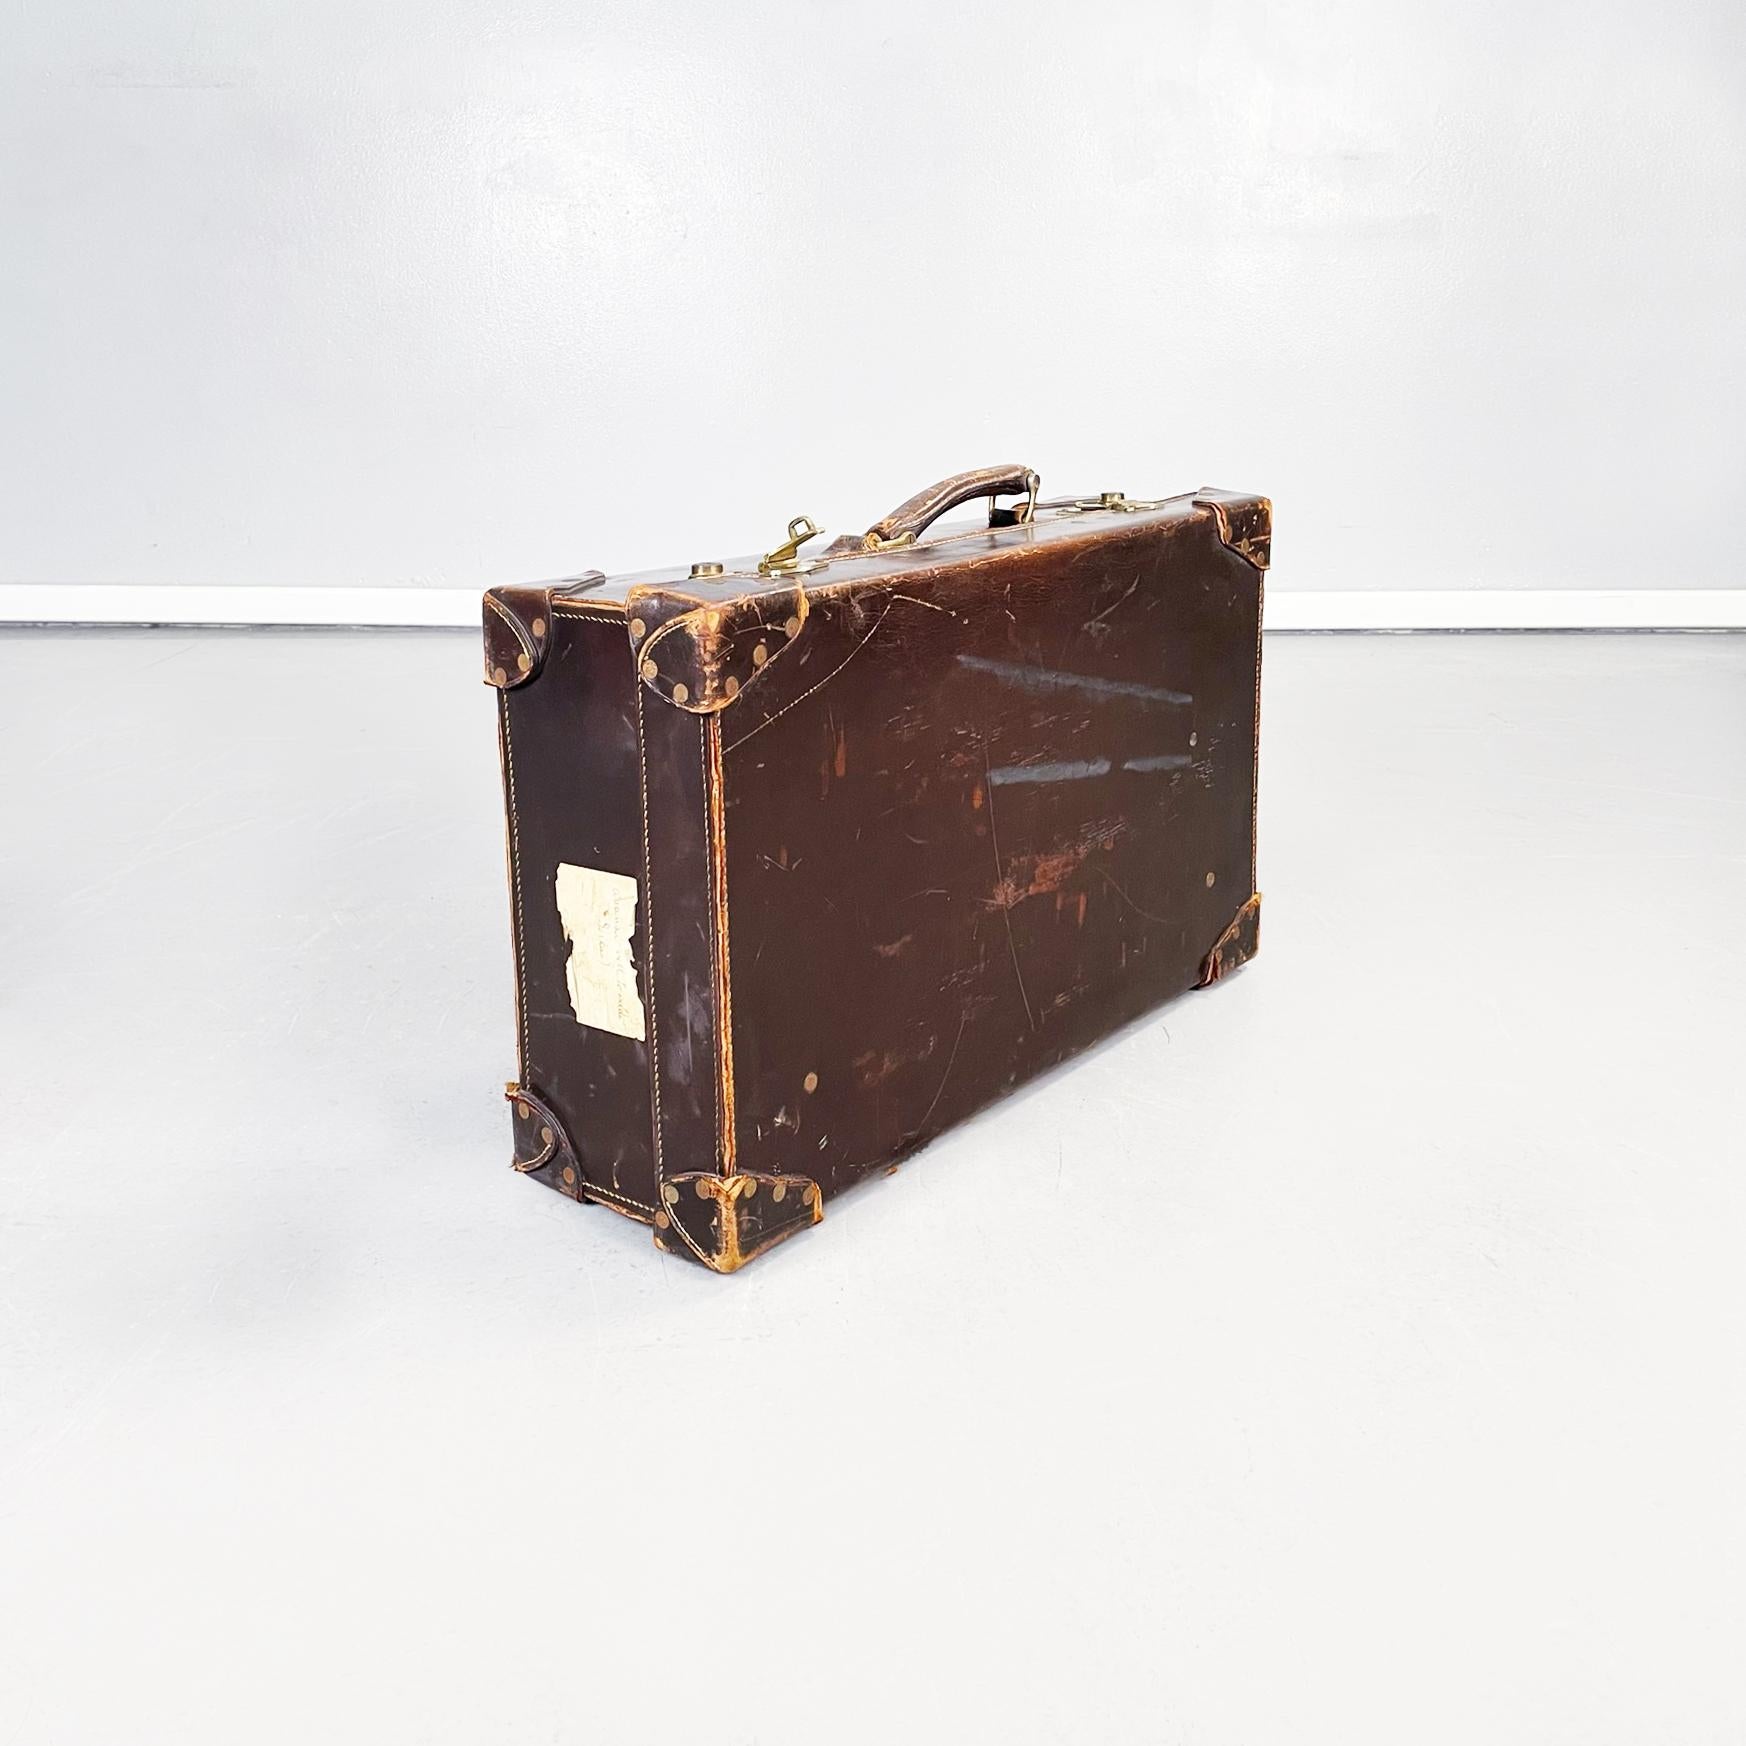 Italienischer Mid-Century Modern Koffer aus braunem und grünem Leder, 1970er Jahre
Rechteckiger Koffer aus braunem Leder. Verschluss aus Messing, Griff vorhanden. Innenausstattung aus waldgrünem Leder mit einer Tasche und dünnen braunen